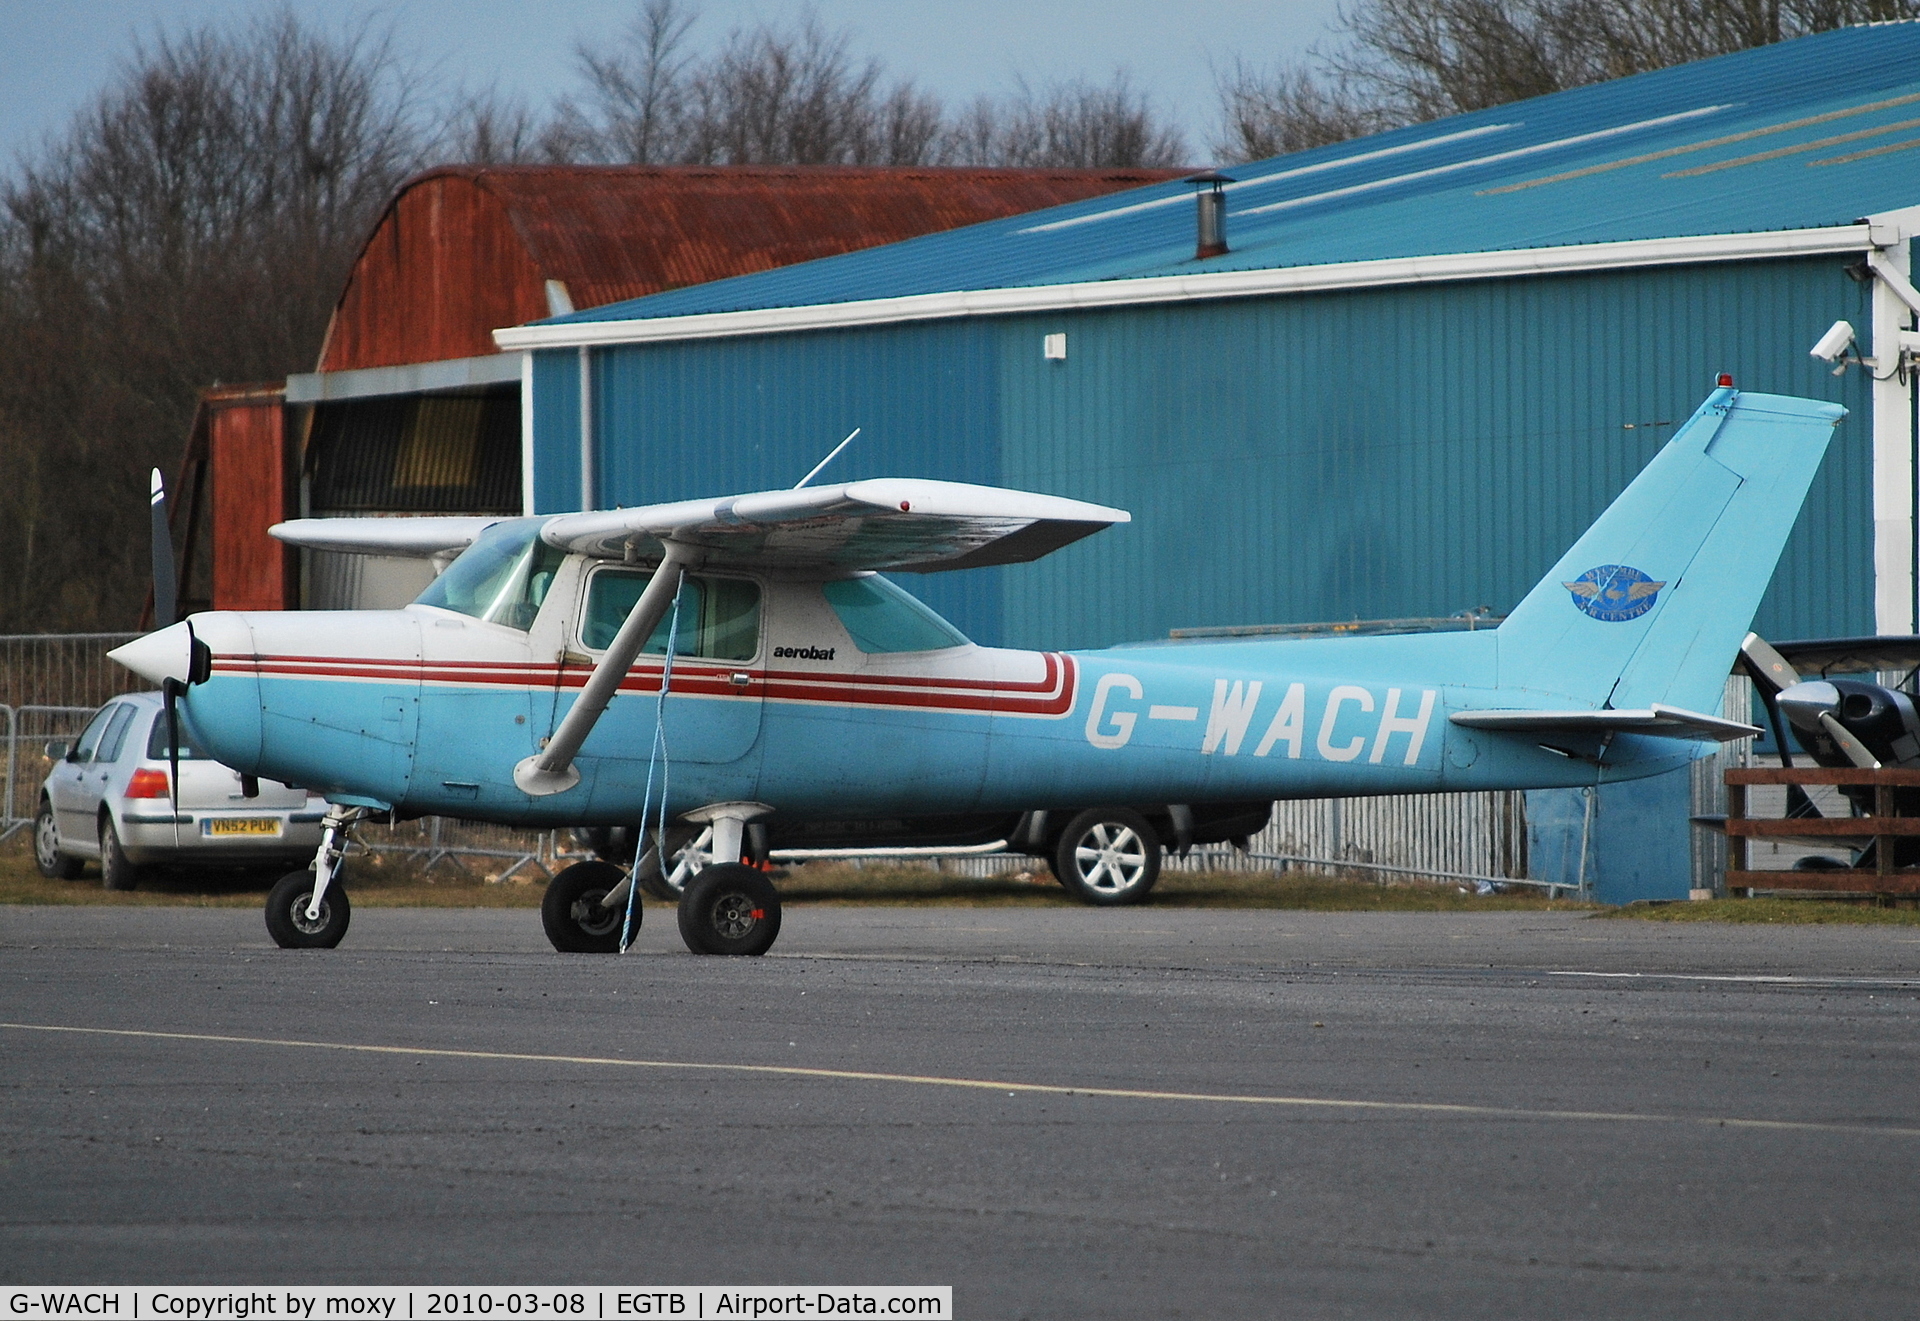 G-WACH, 1986 Reims FA152 Aerobat C/N 0425, Reims Cessna FA152